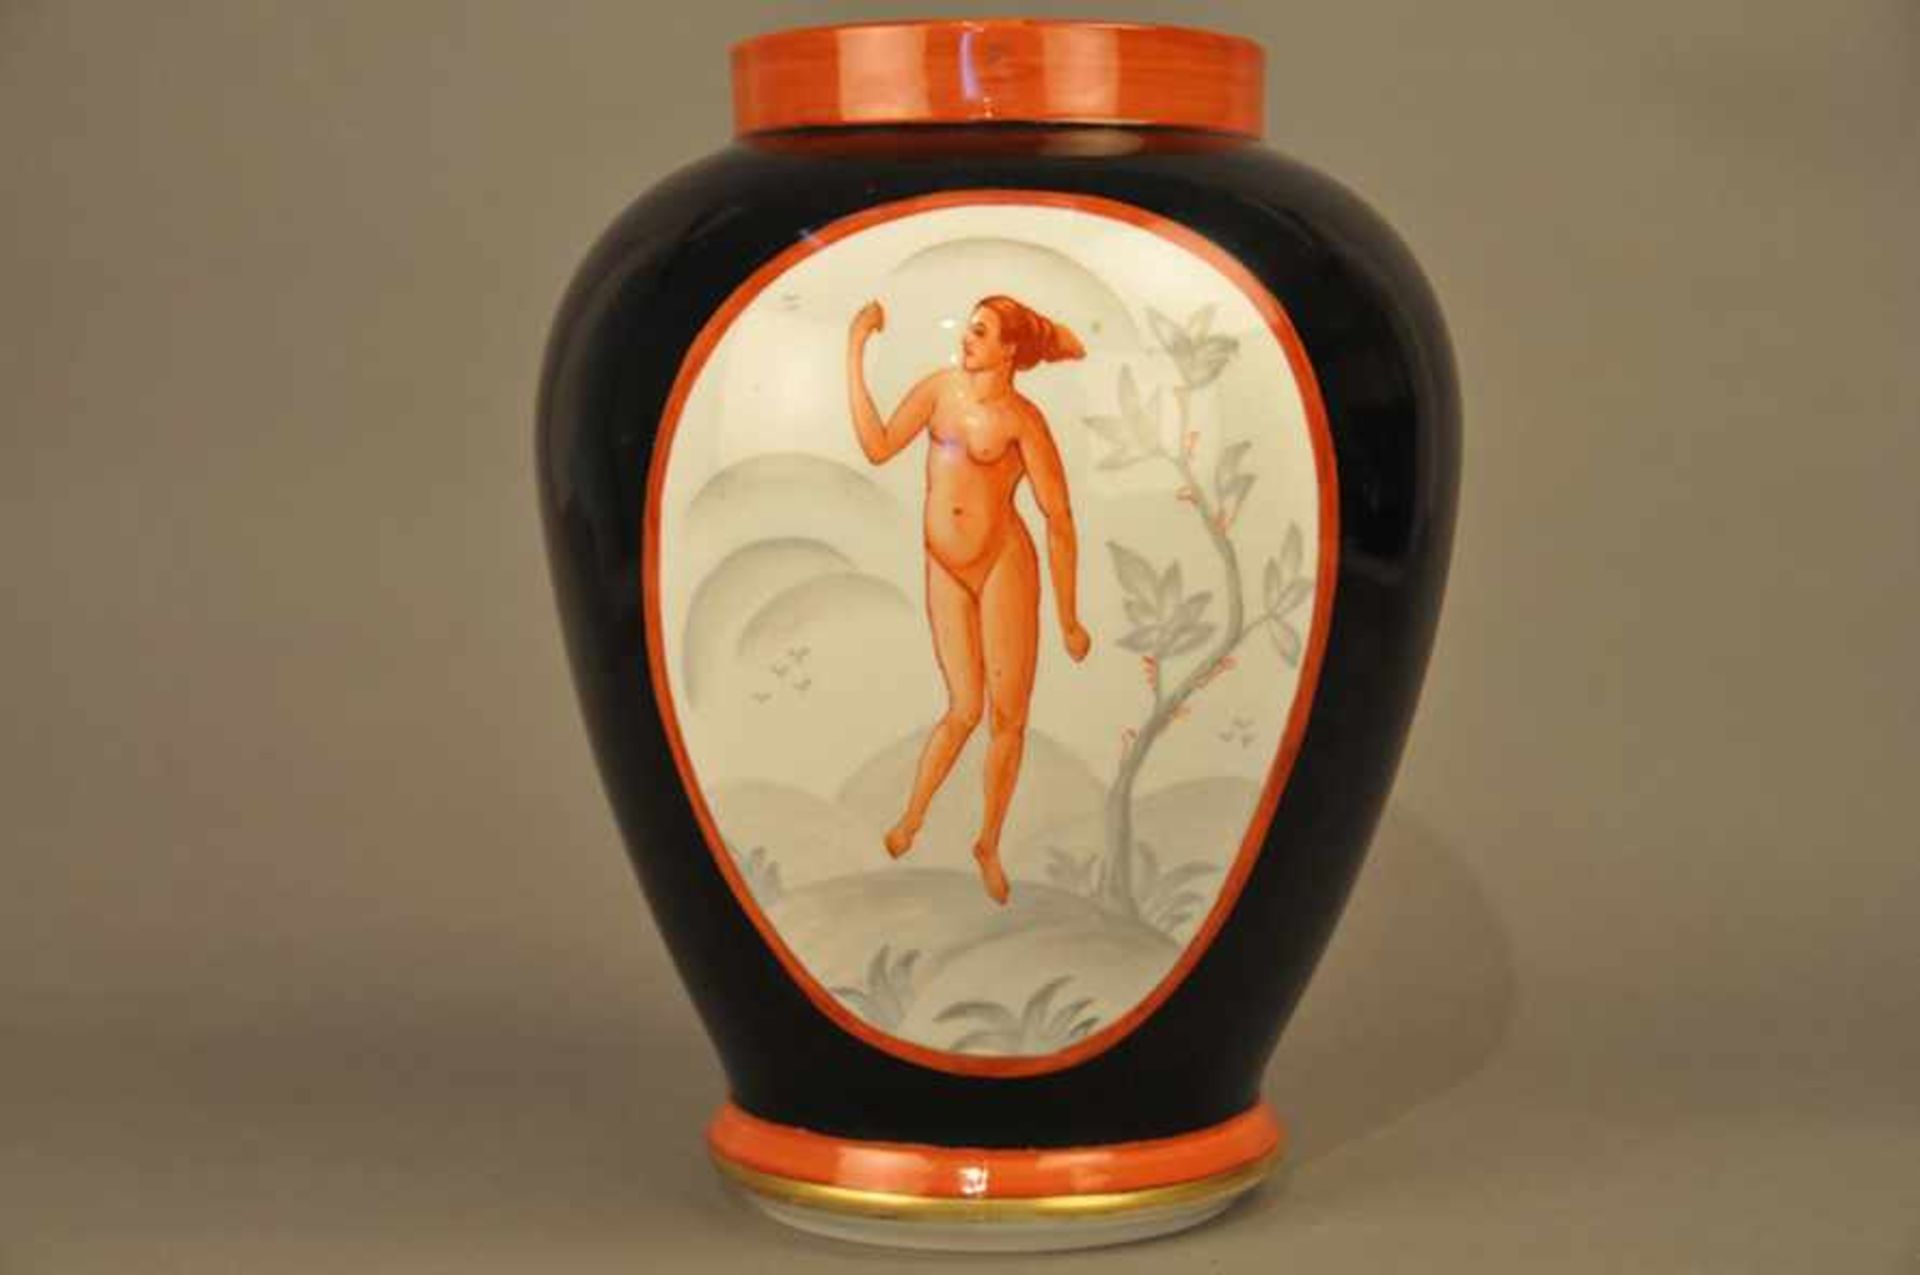 Bauchige Vase, Jugendstil / Art Deco. Schwarzer Fond, 2 Kartuschen mit weiblichen Akten in Rot, - Bild 3 aus 7